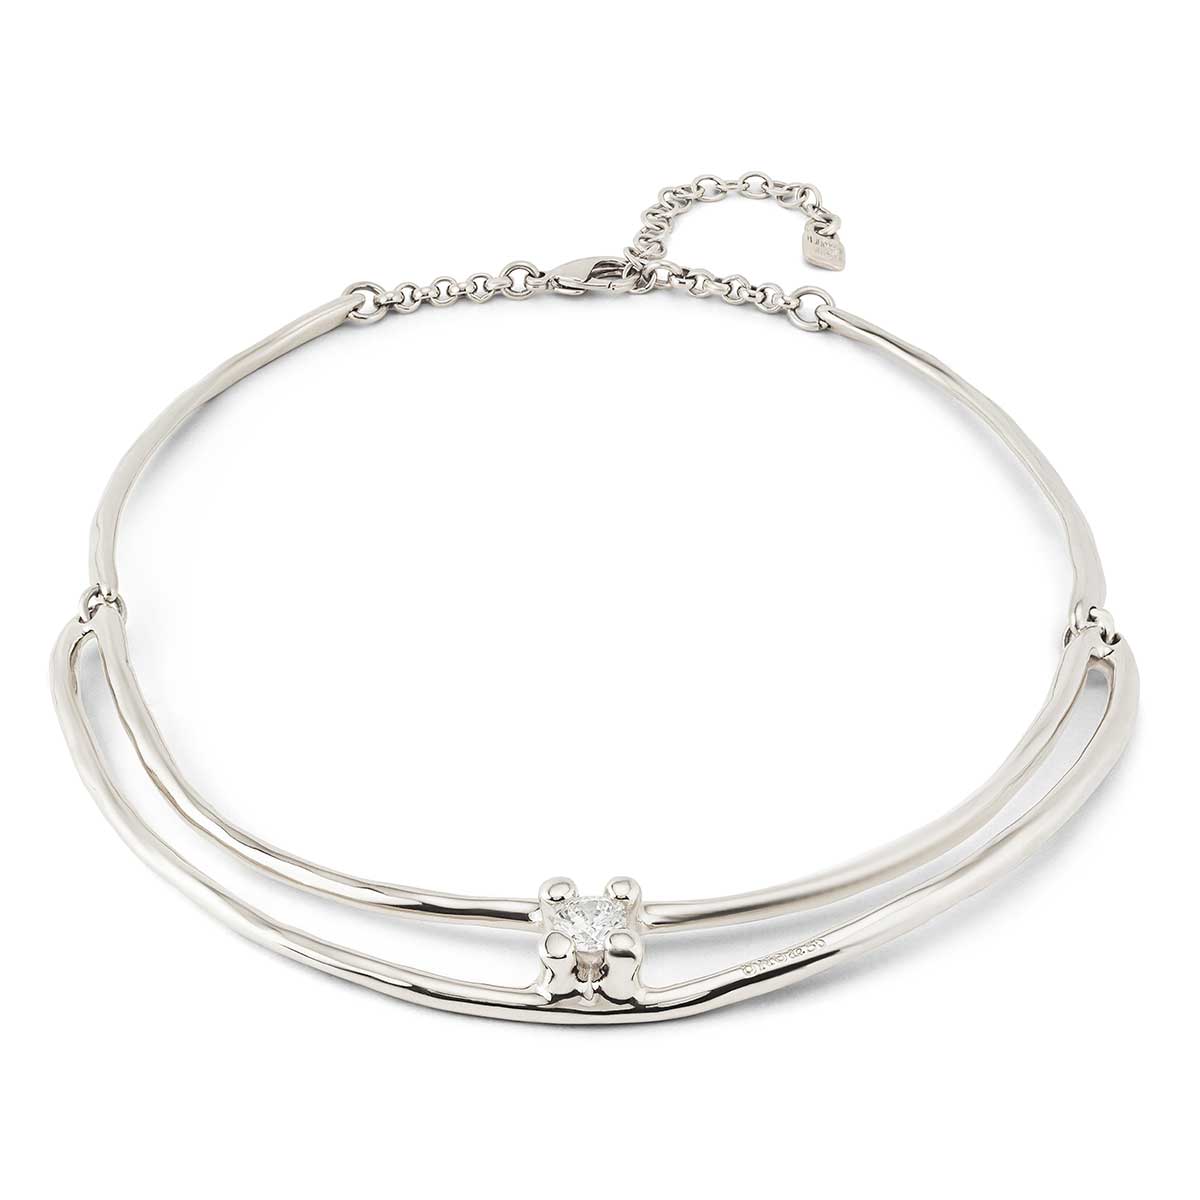 Купить Ожерелье Anima с серебром - Фото 10